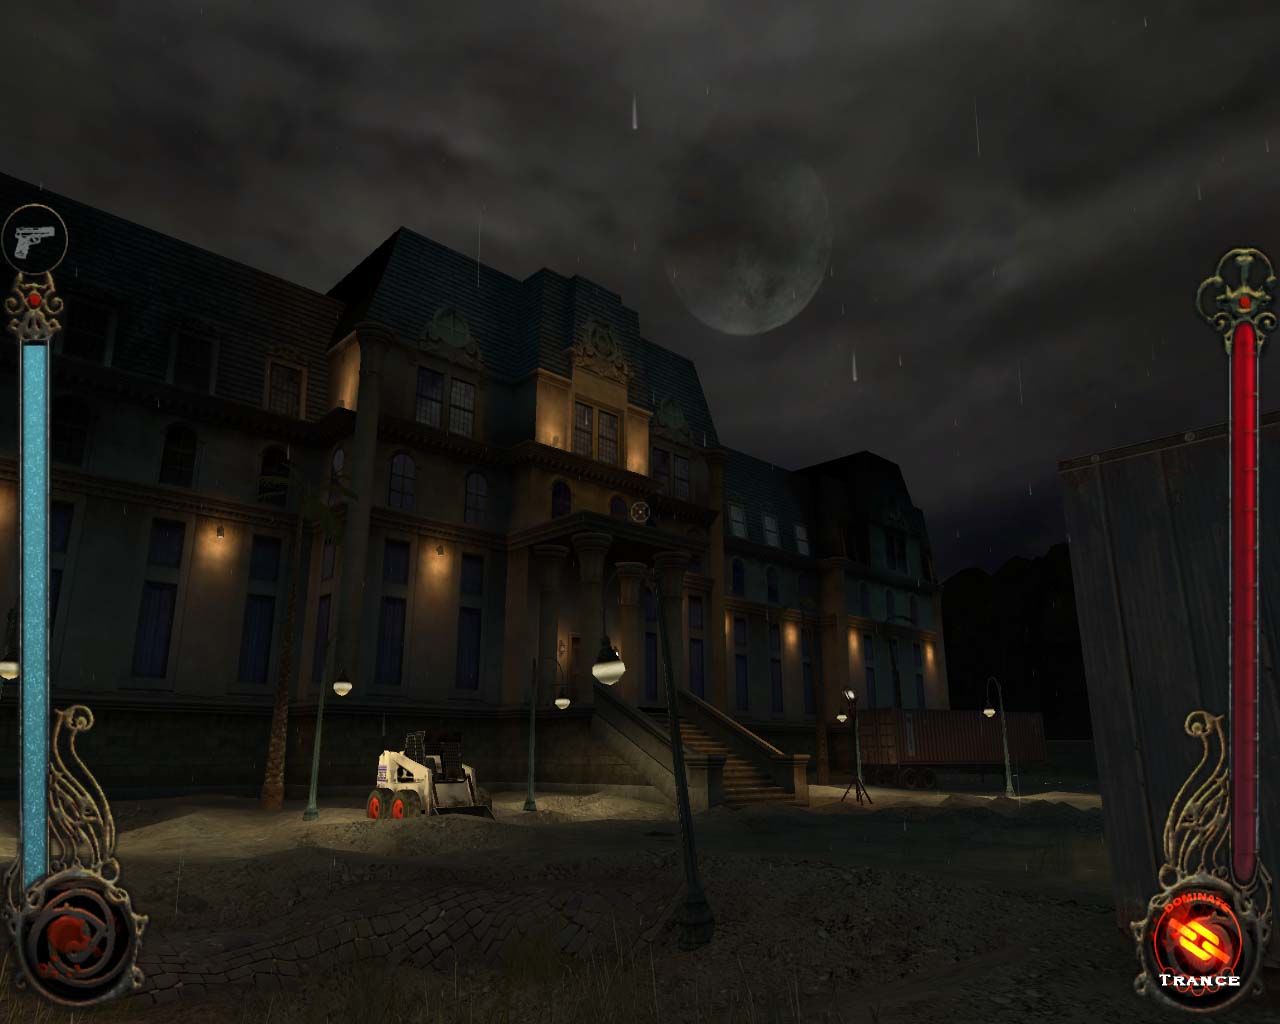 Zdjęcie z gry Vampire The Masquerade Bloodlines, przedstawiające Ocean House Hotel